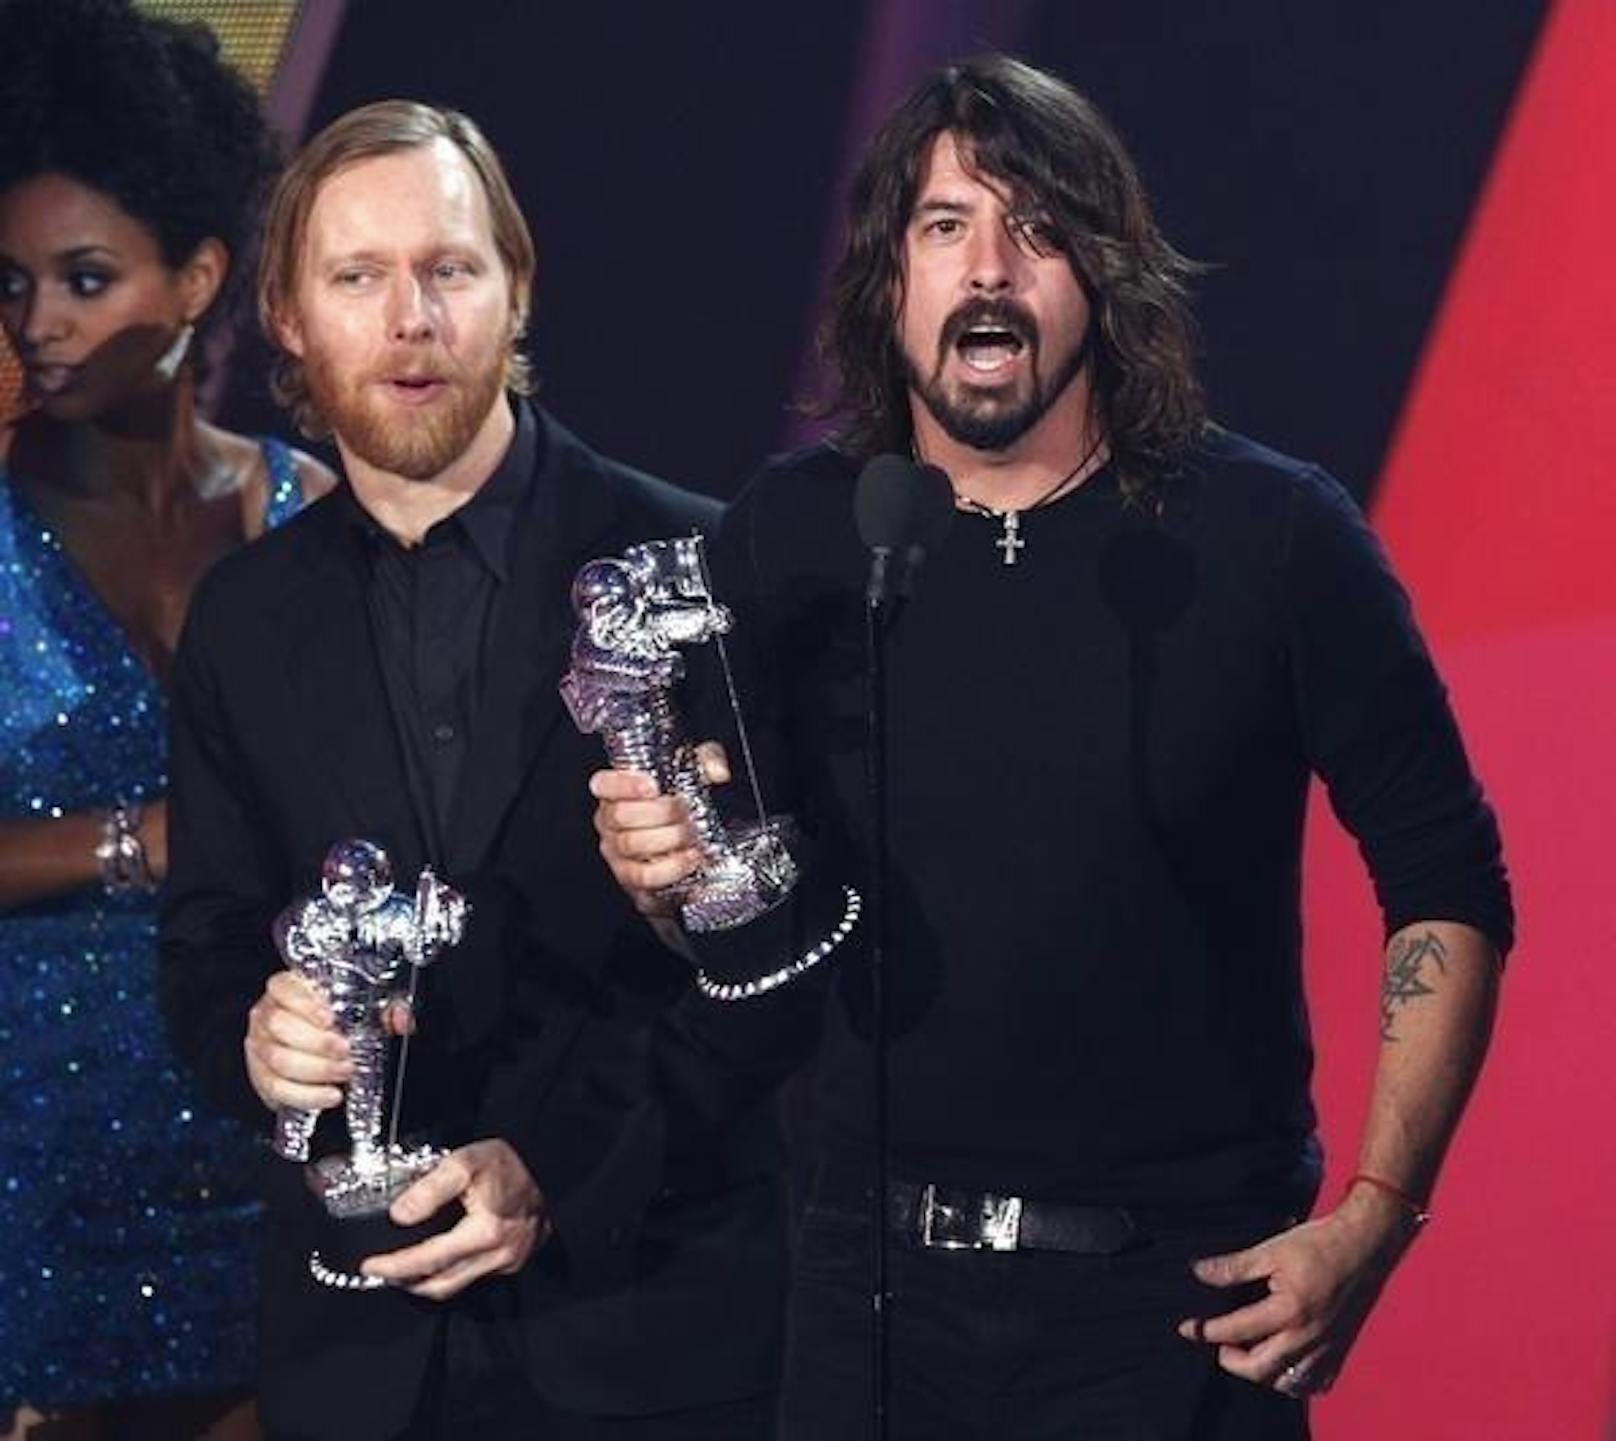 Die Foo Fighters sind Auszeichnungen mittlerweile gewohnt. Auch diesmal könnten sie abräumen, denn sie sind 6 mal nominiert - im Bild der Bassist Nate Mendel (li.) und Frontman Dave Grohl